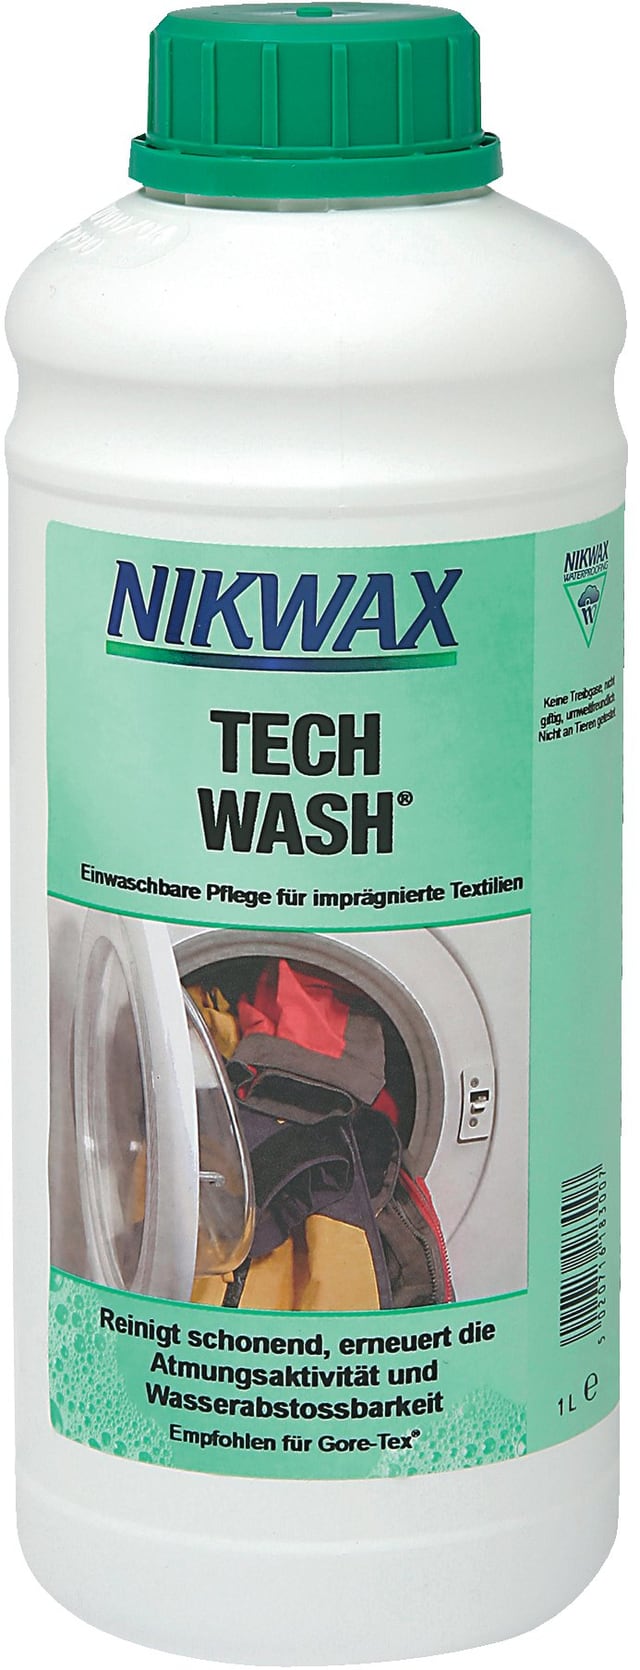 nikwax Tech Wash 1 Liter Waschmittel